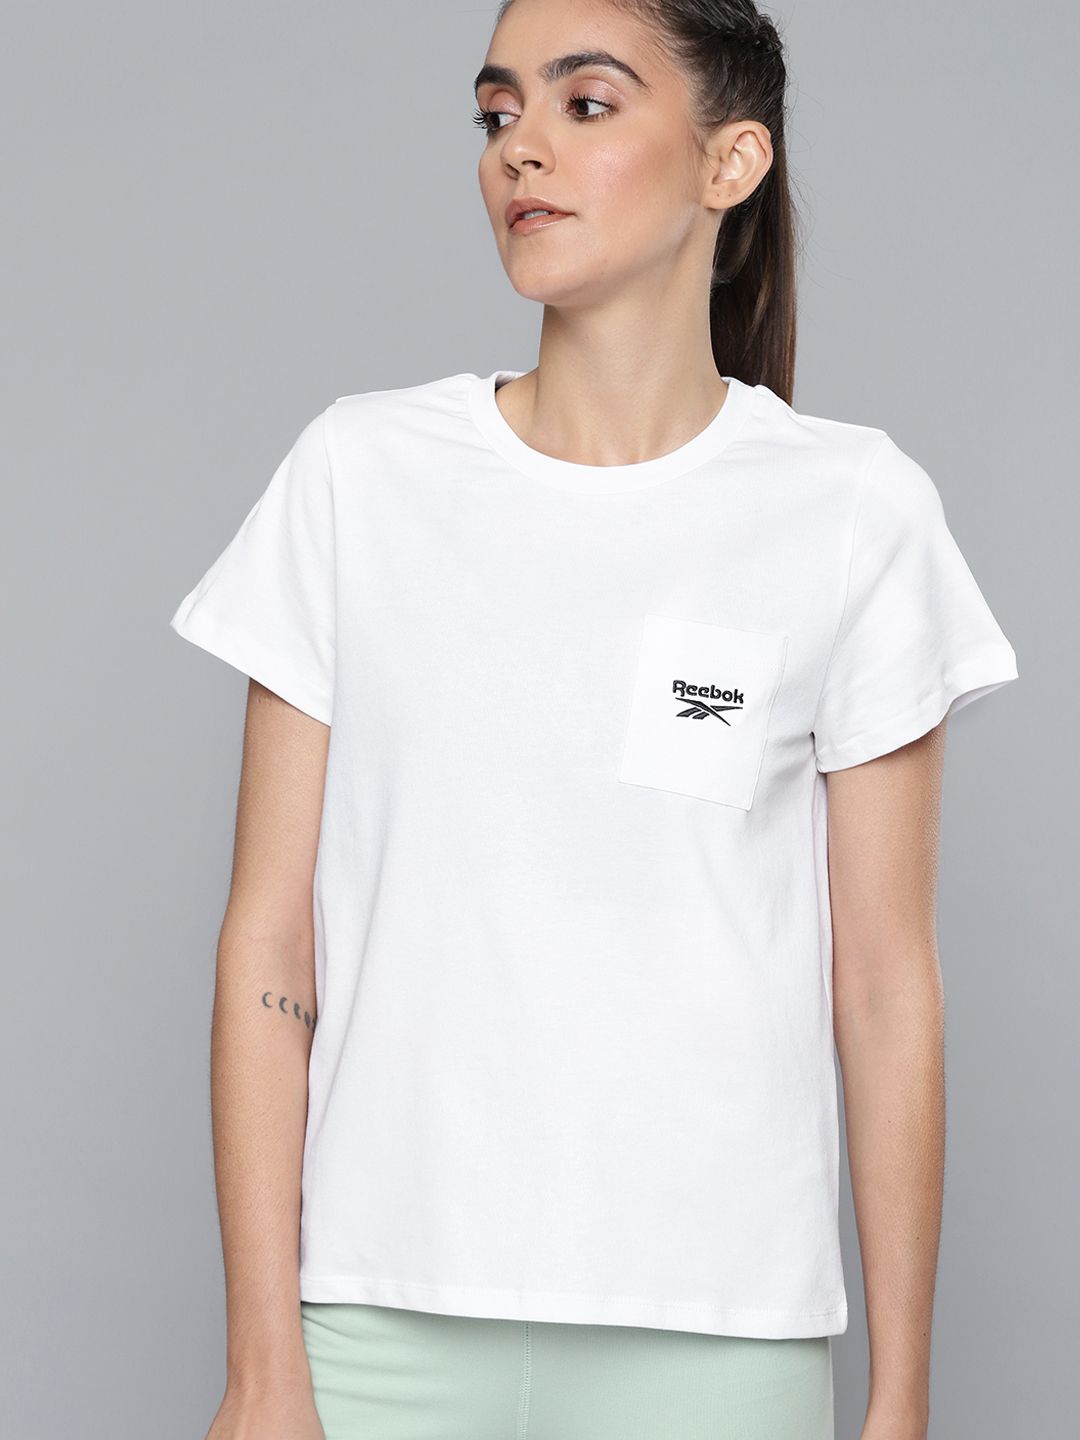 Reebok Women White Brand Logo Printed T-shirt Price in India